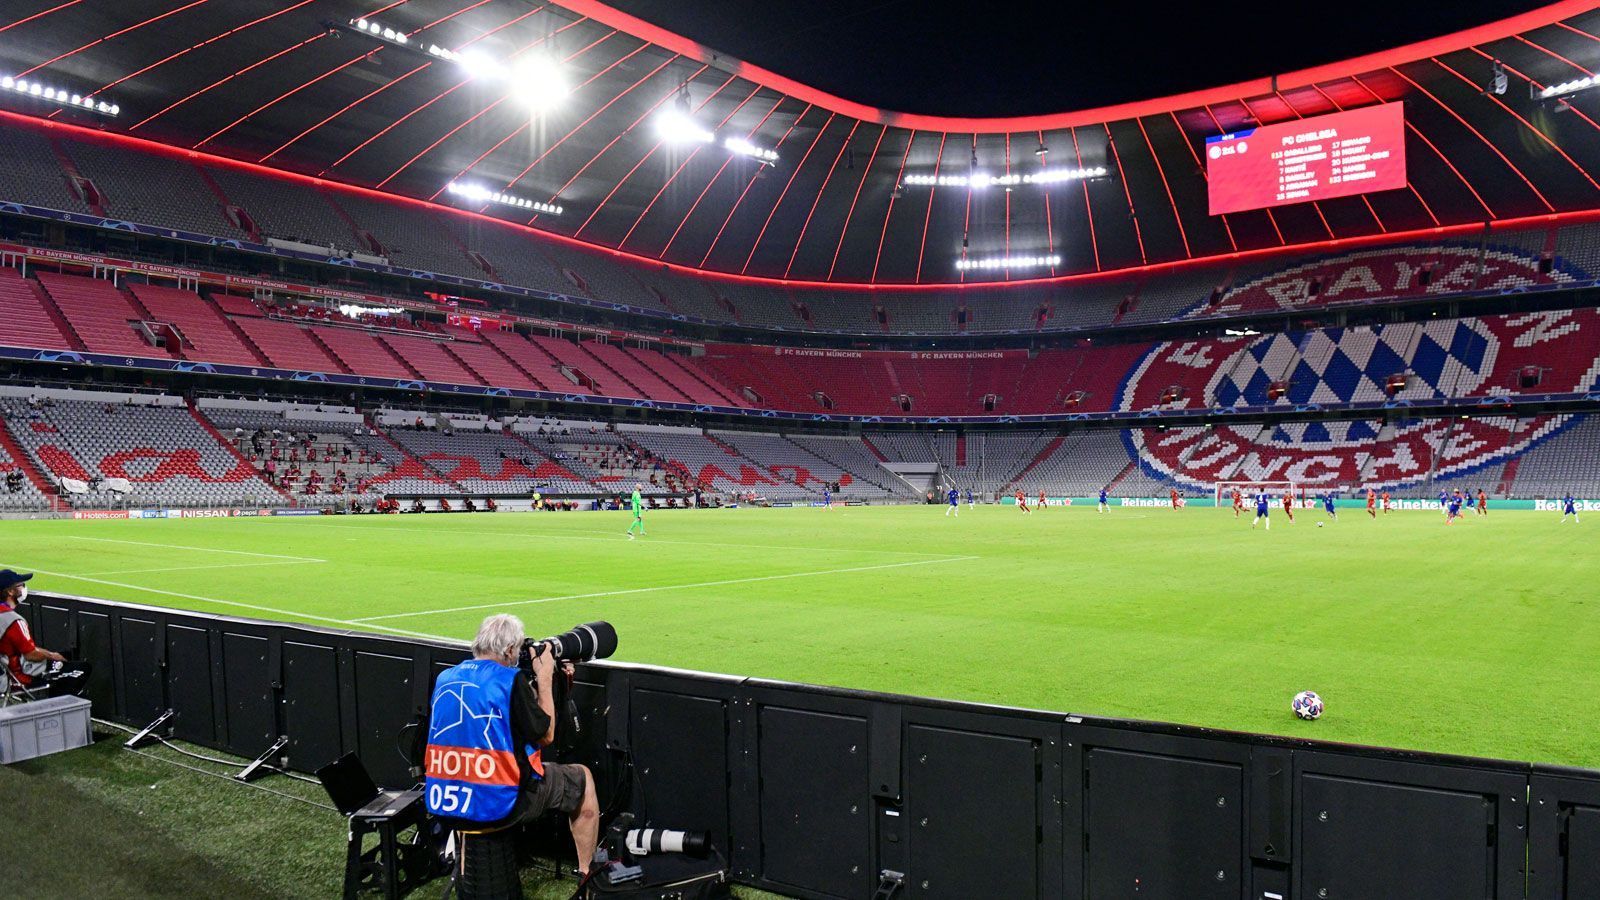 
                <strong>FC Bayern München</strong><br>
                Stadion: Allianz Arena Kapazität: 75.024Vorgehen: Kein Verkauf von Dauerkarten, stattdessen werden diese für bisherige Inhaber reserviert, Abbuchungen erst bei Rückkehr zum Normalspielbetrieb
              